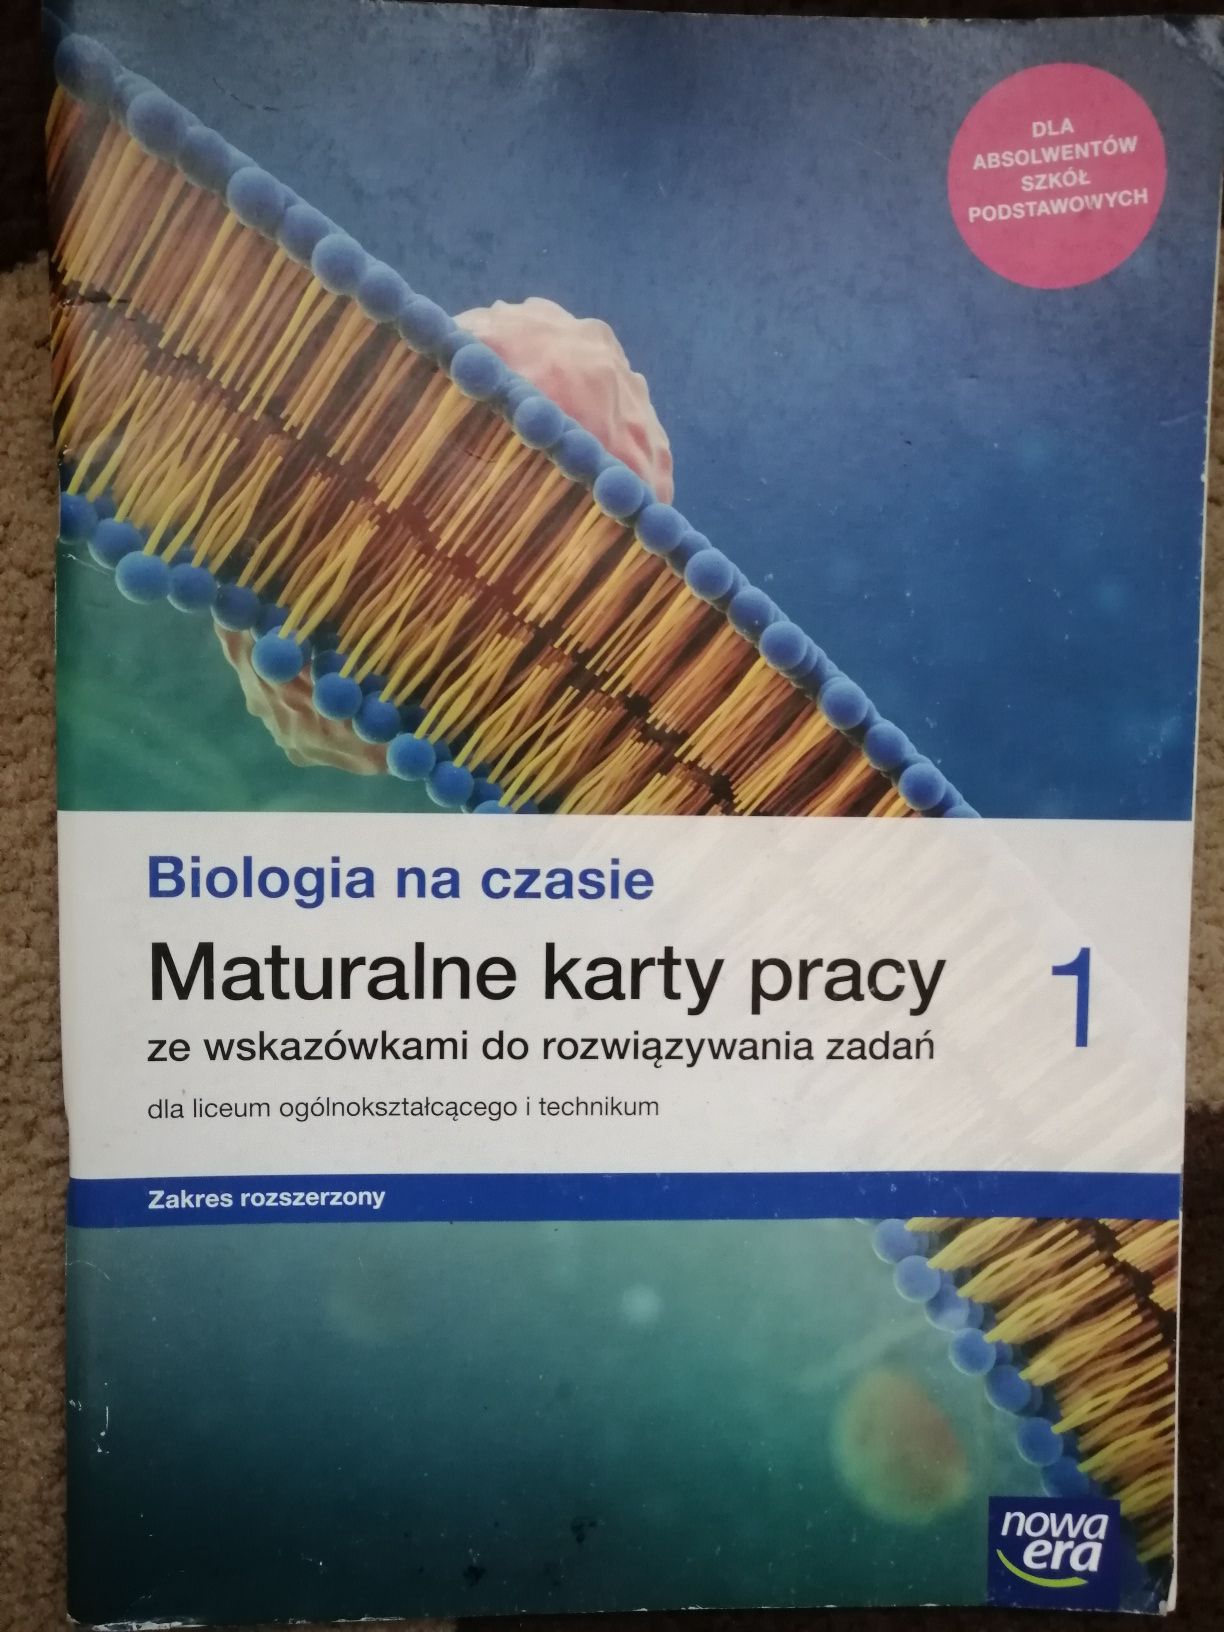 Биология 1 класс польского лицея/техникума